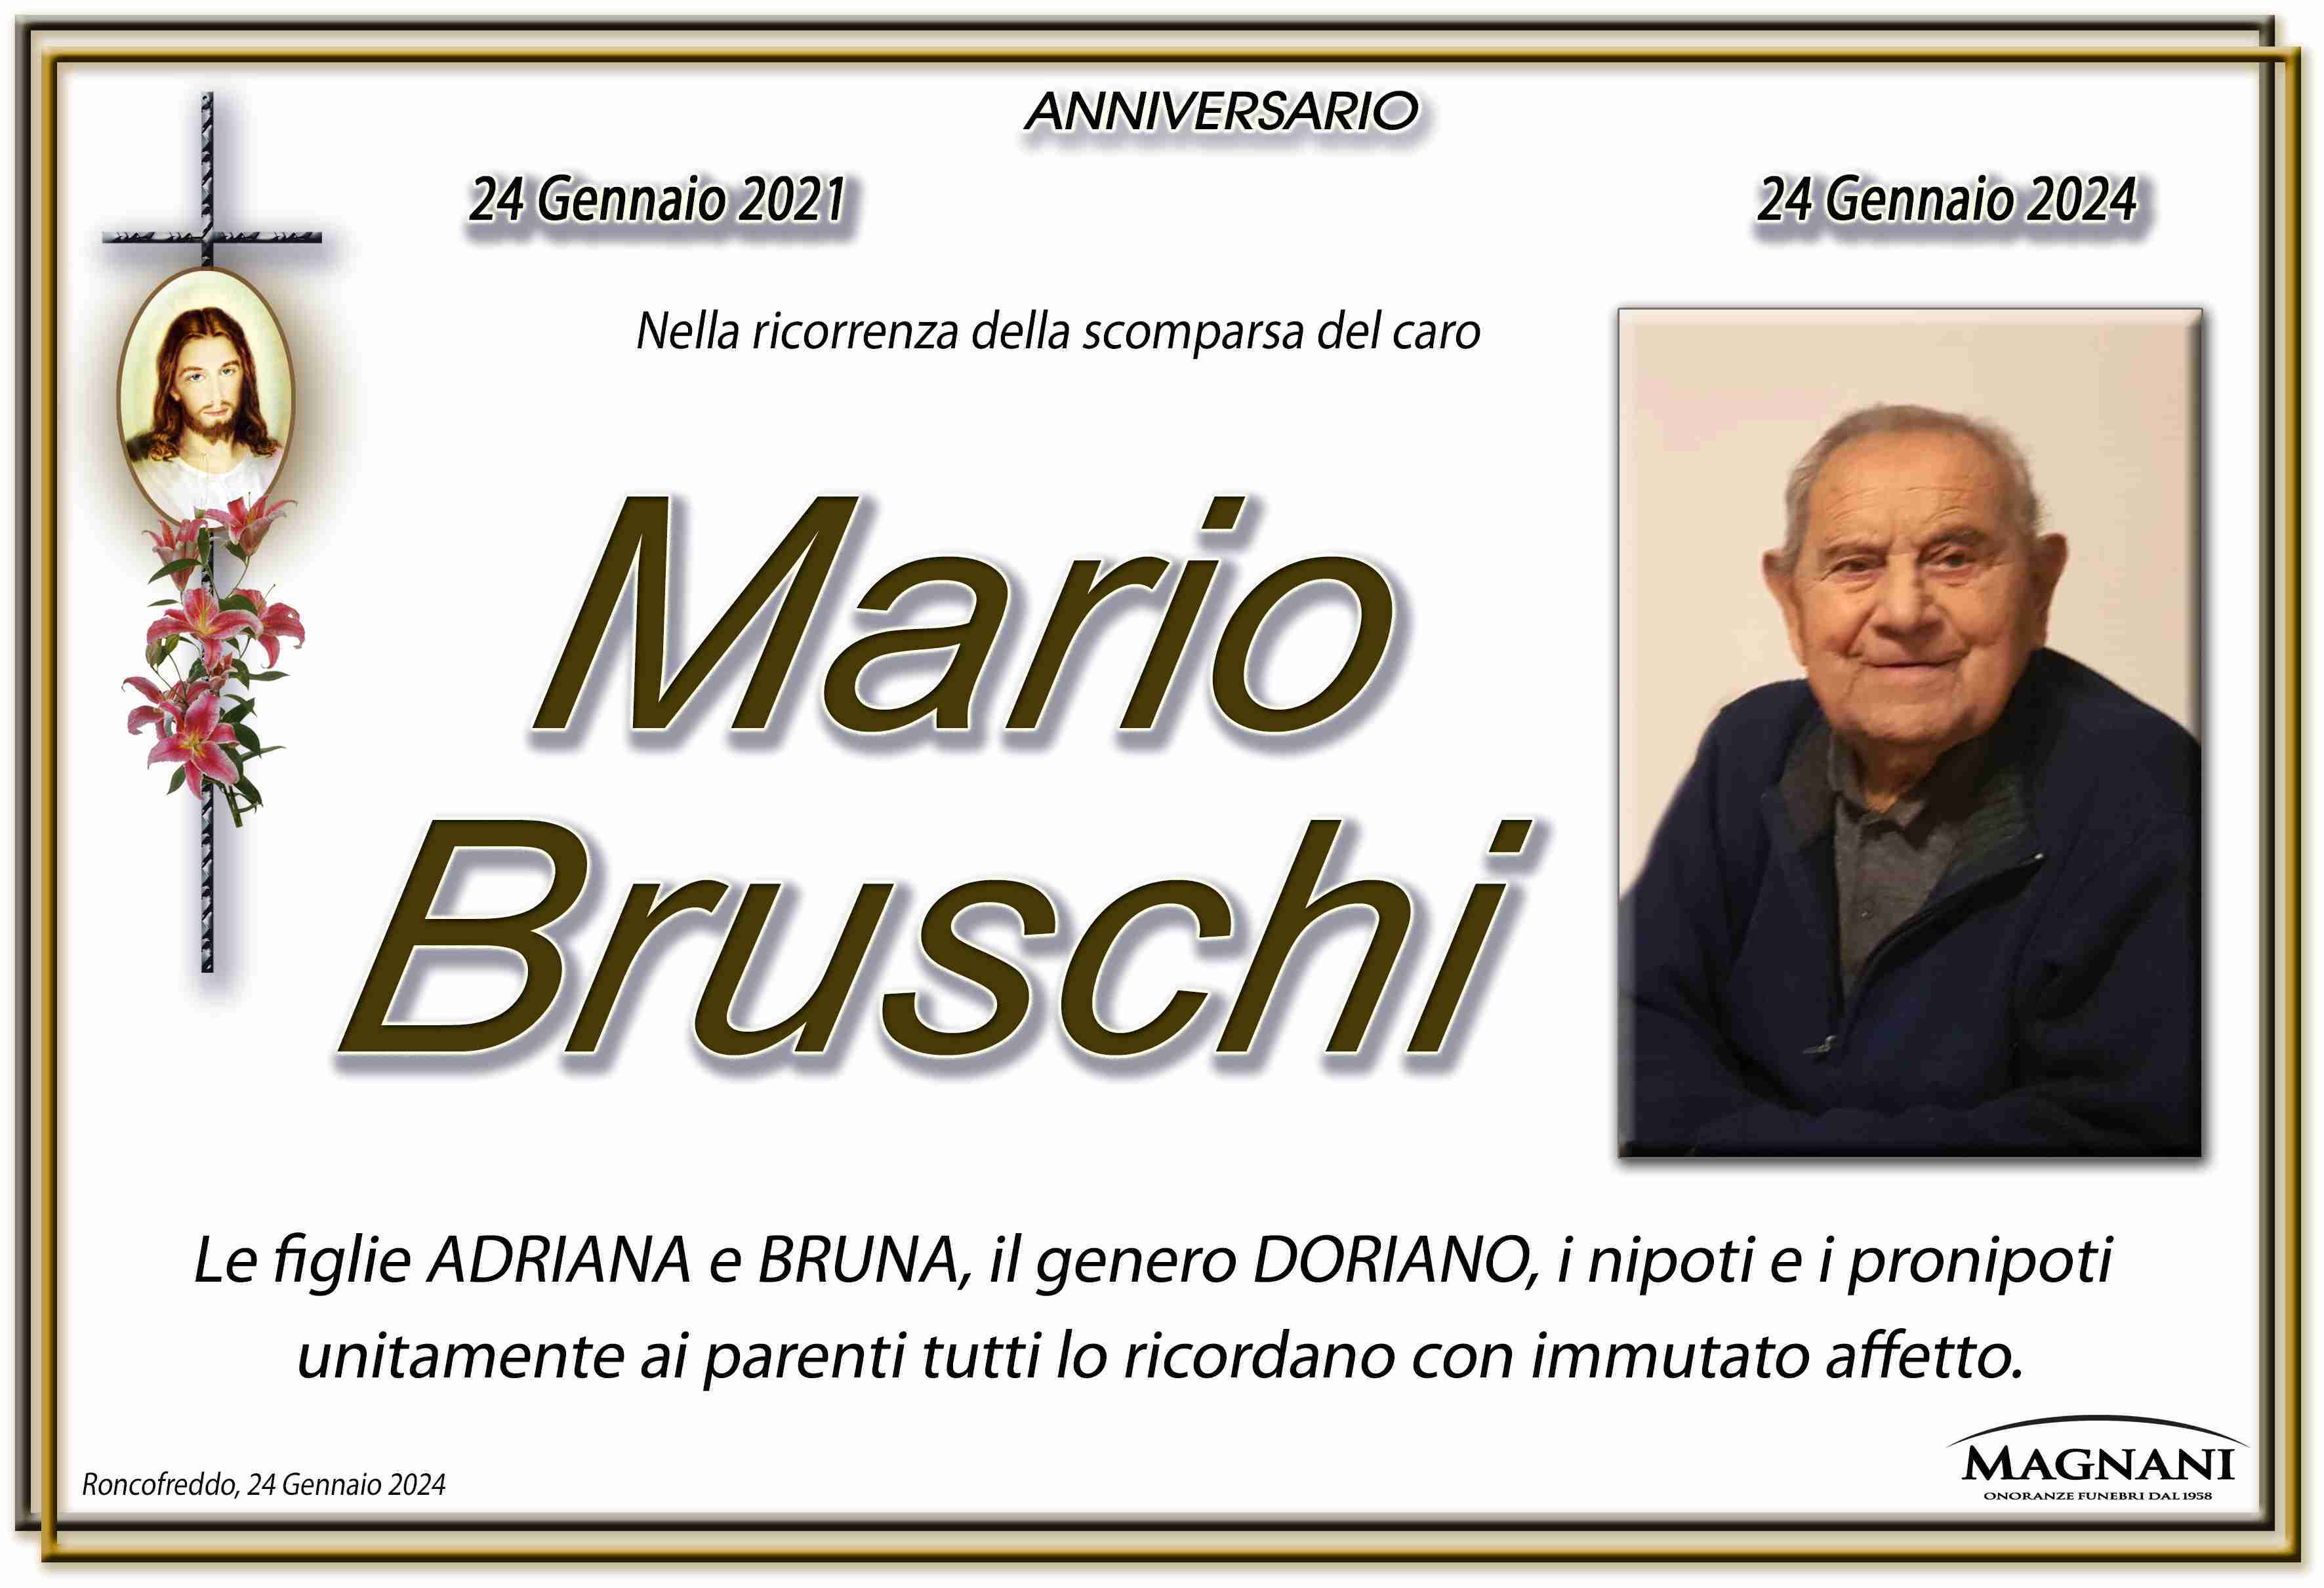 Mario Bruschi